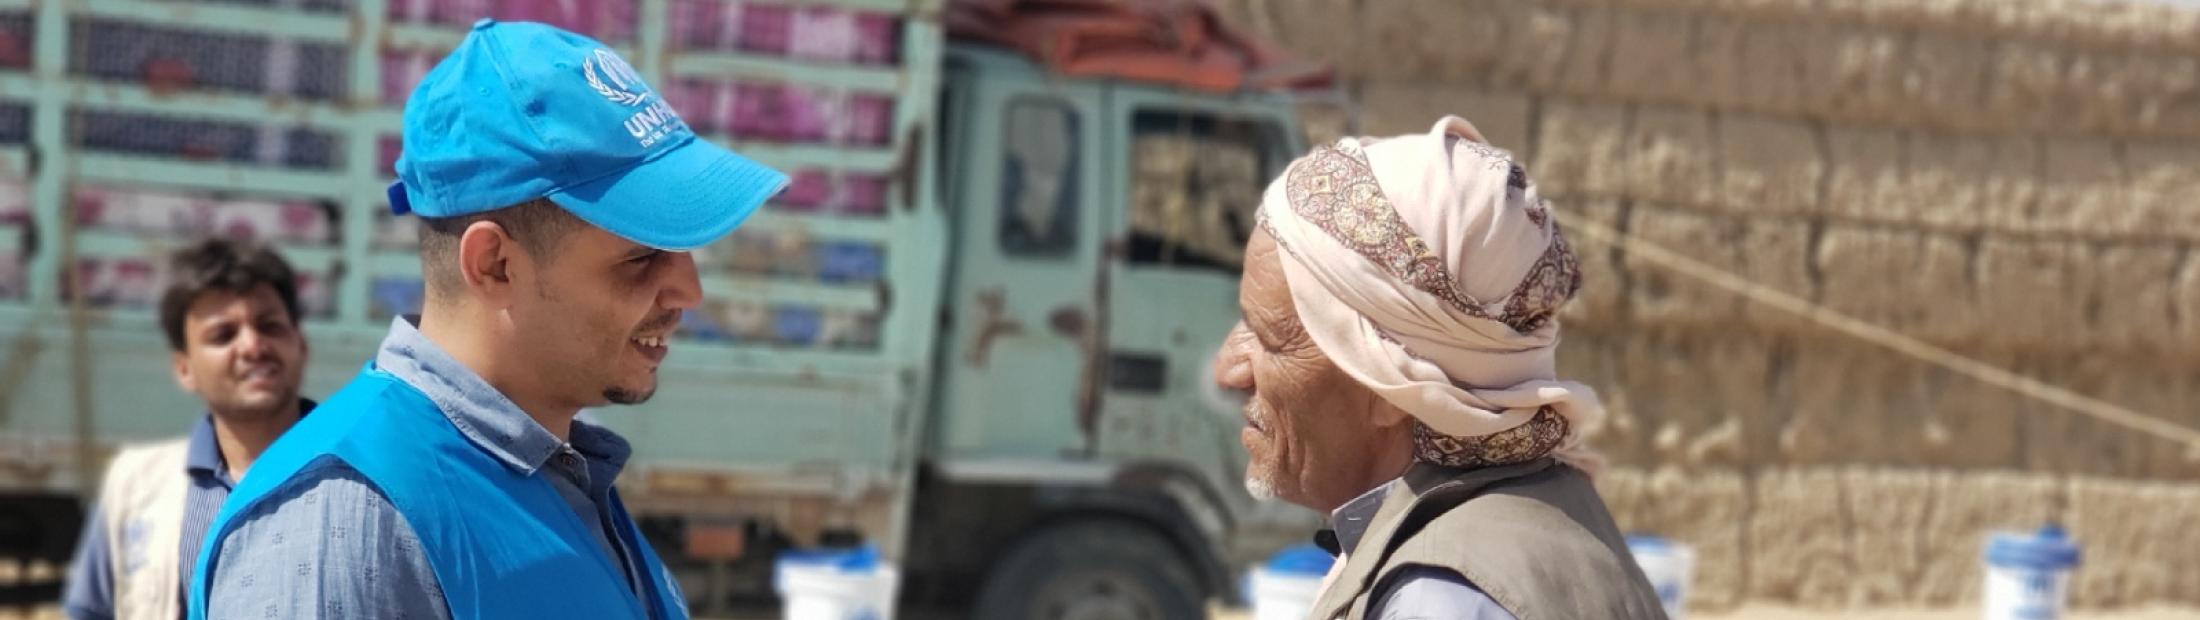 La Junta Castilla-La Mancha y la protección para los desplazados internos en Yemen